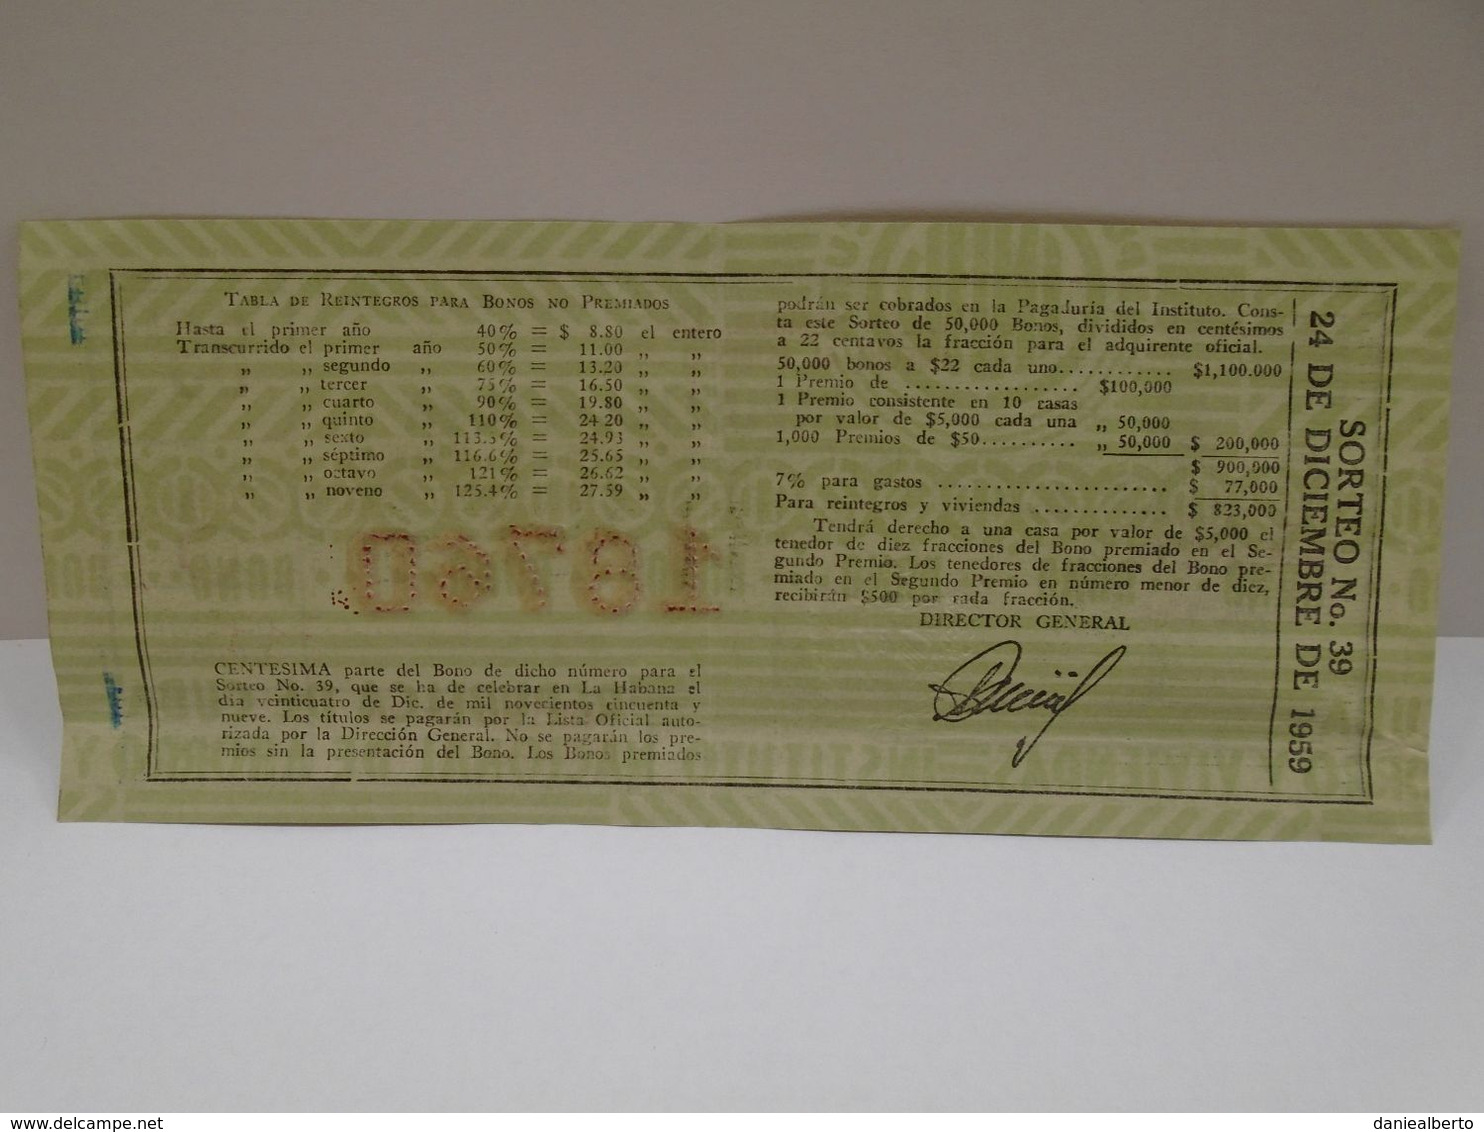 Cuba, Republica De Cuba Loteria Nacional, 24 De Diciembre 1959,  Pascuas En Cuba, Sin Circular En Excelente Condiciones. - Timbres-taxe